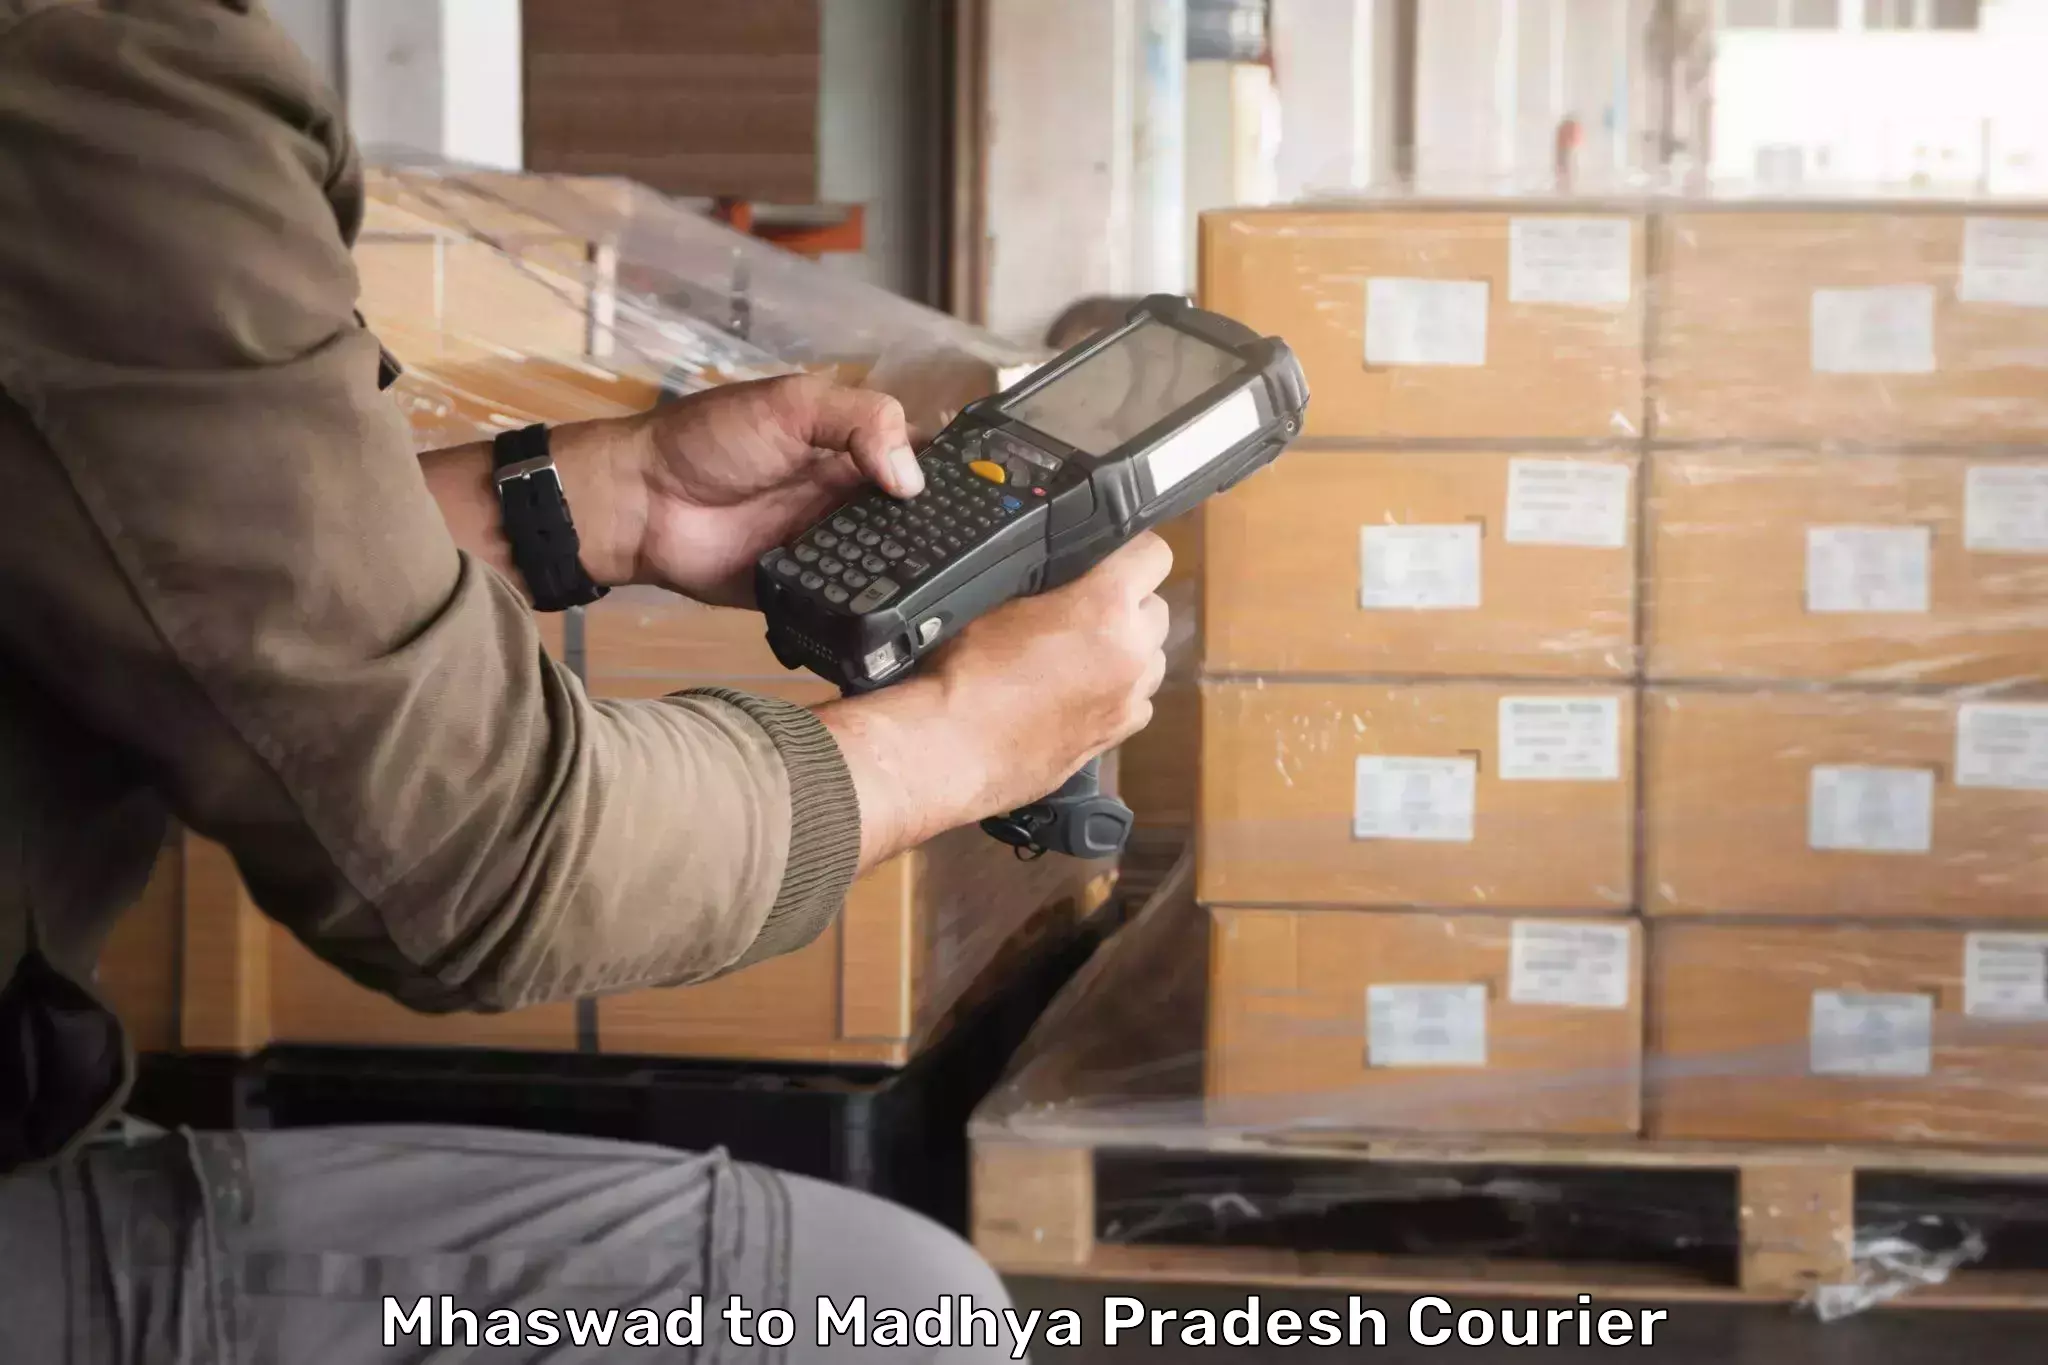 On-demand courier Mhaswad to Madhya Pradesh